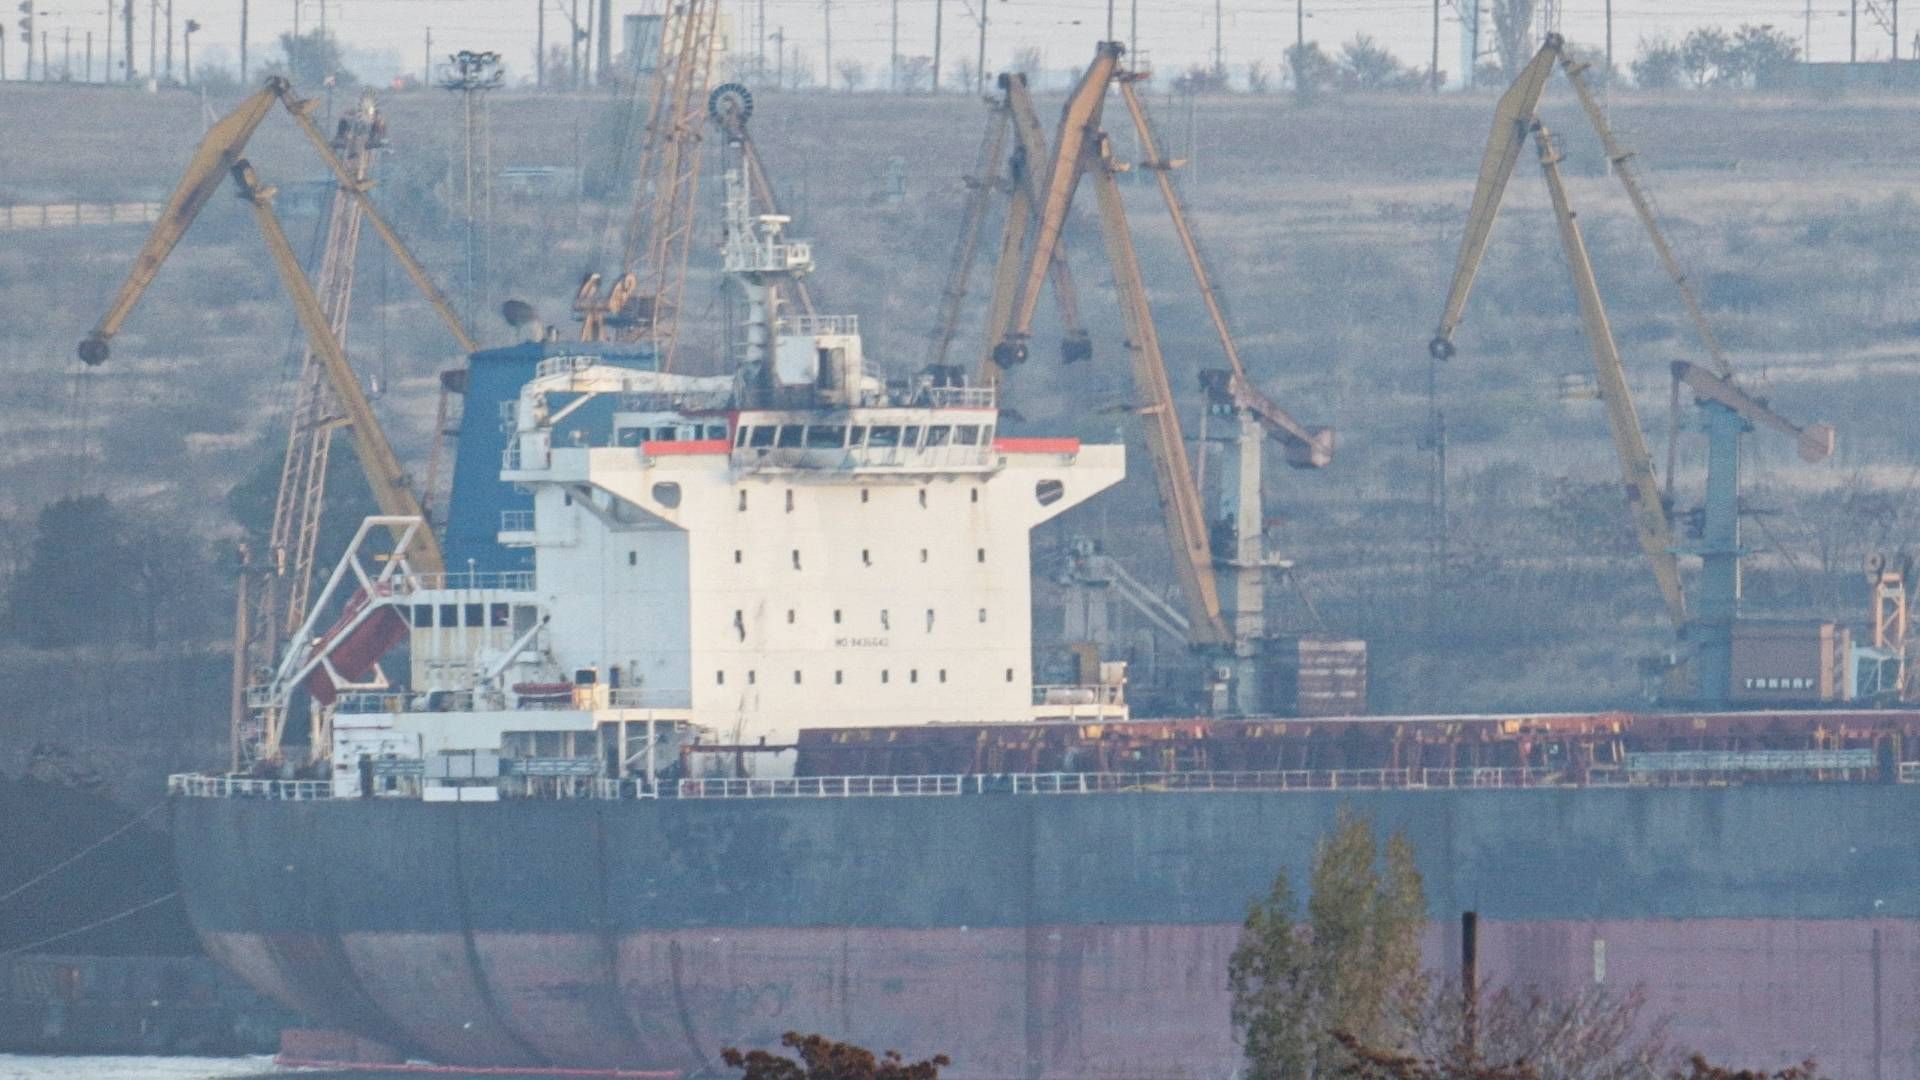 Ifølge oplysninger fra Ukraine er det et tørlastskib, der sejler under Liberisk flag, som blev ramt af et missilangreb i havnen Pivdennyi. | Foto: Stringer